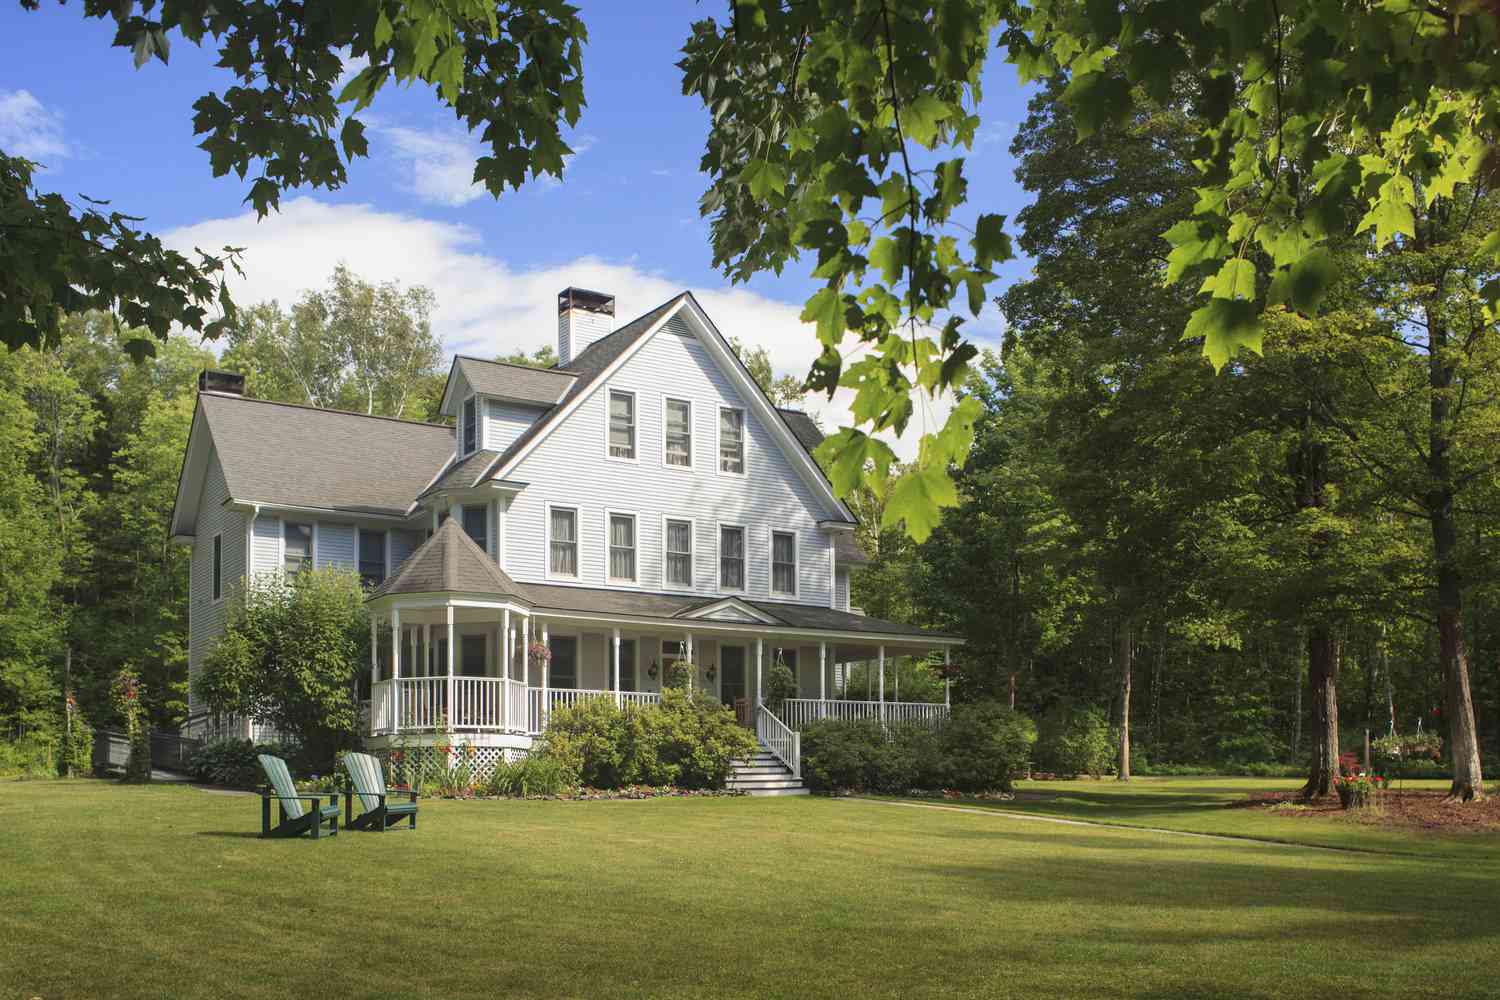 Maison victorienne avec pelouse et grand porche d'entrée en été